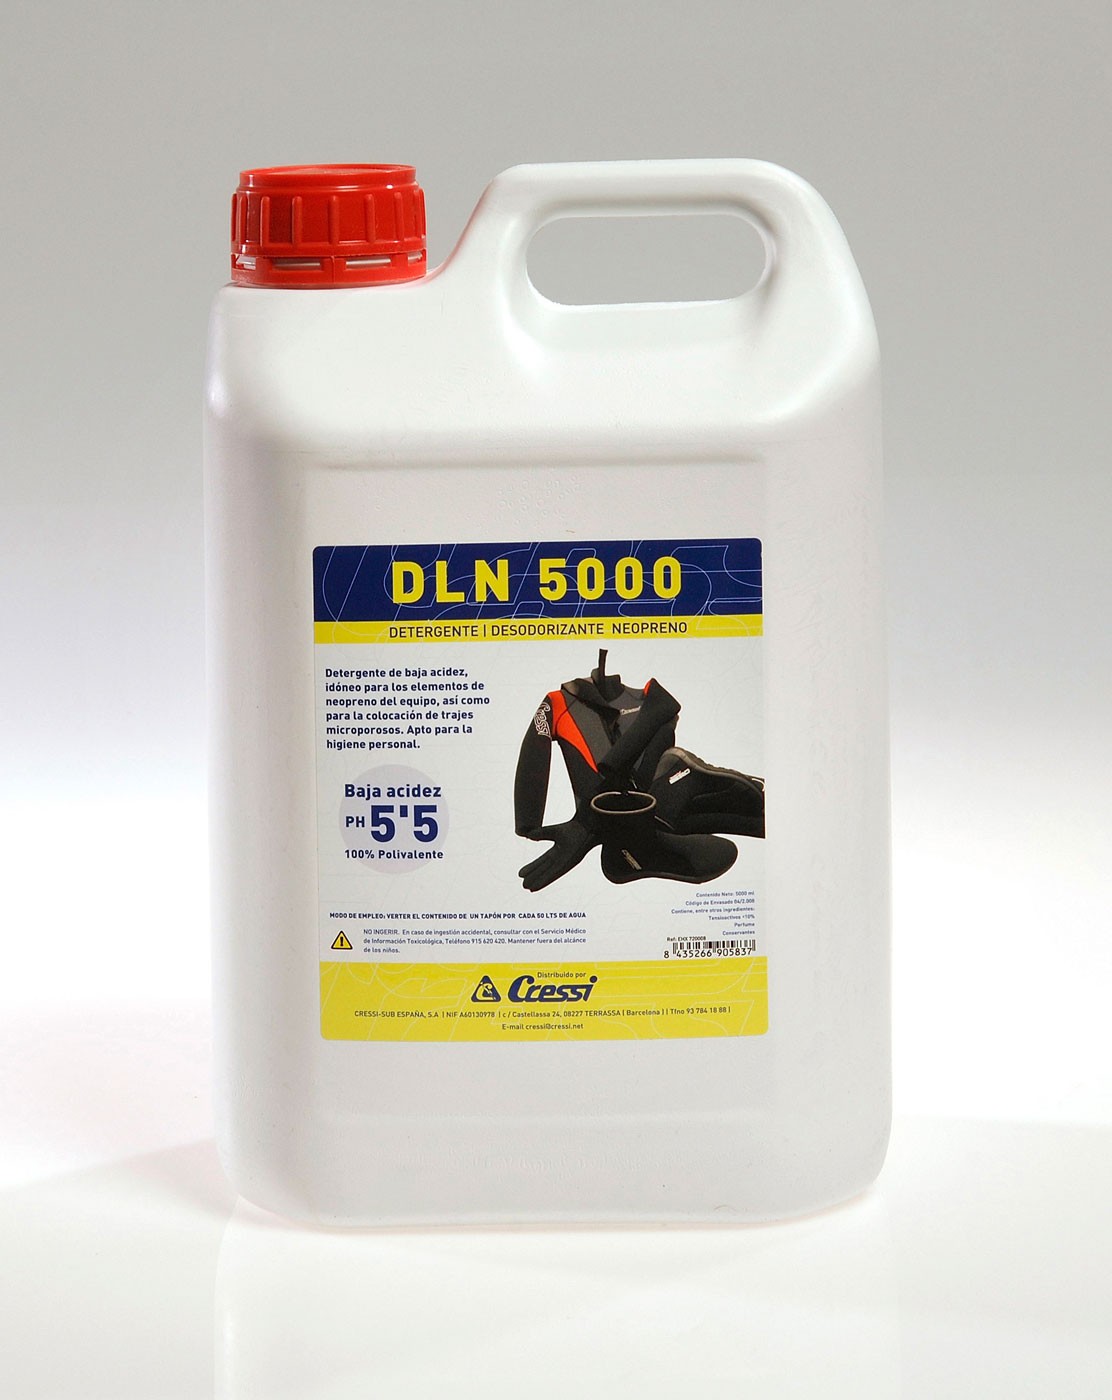 DLN 5000